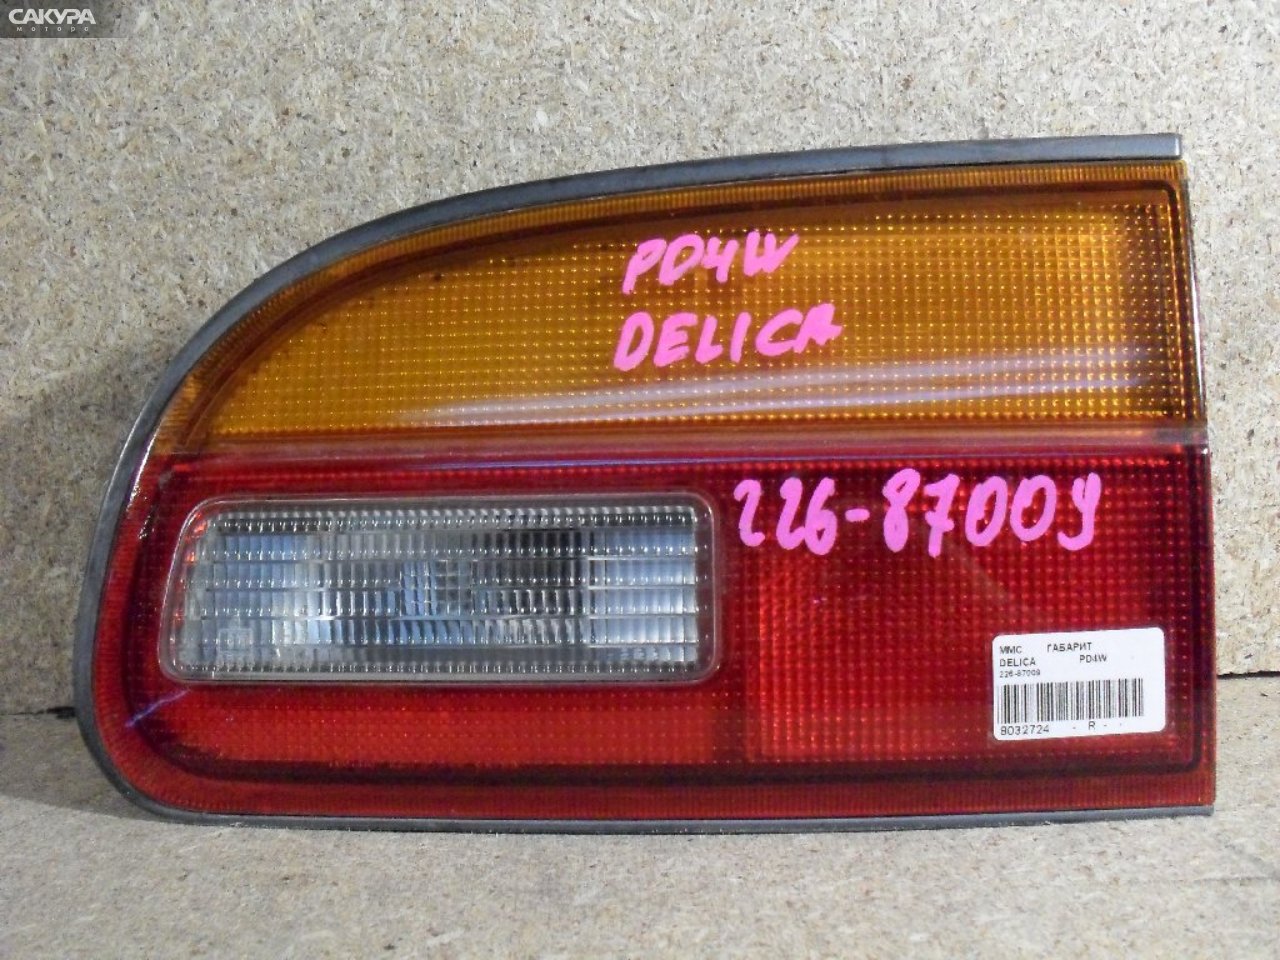 Фонарь вставка багажника правый Mitsubishi Delica PD4W 226-87009: купить в Сакура Абакан.